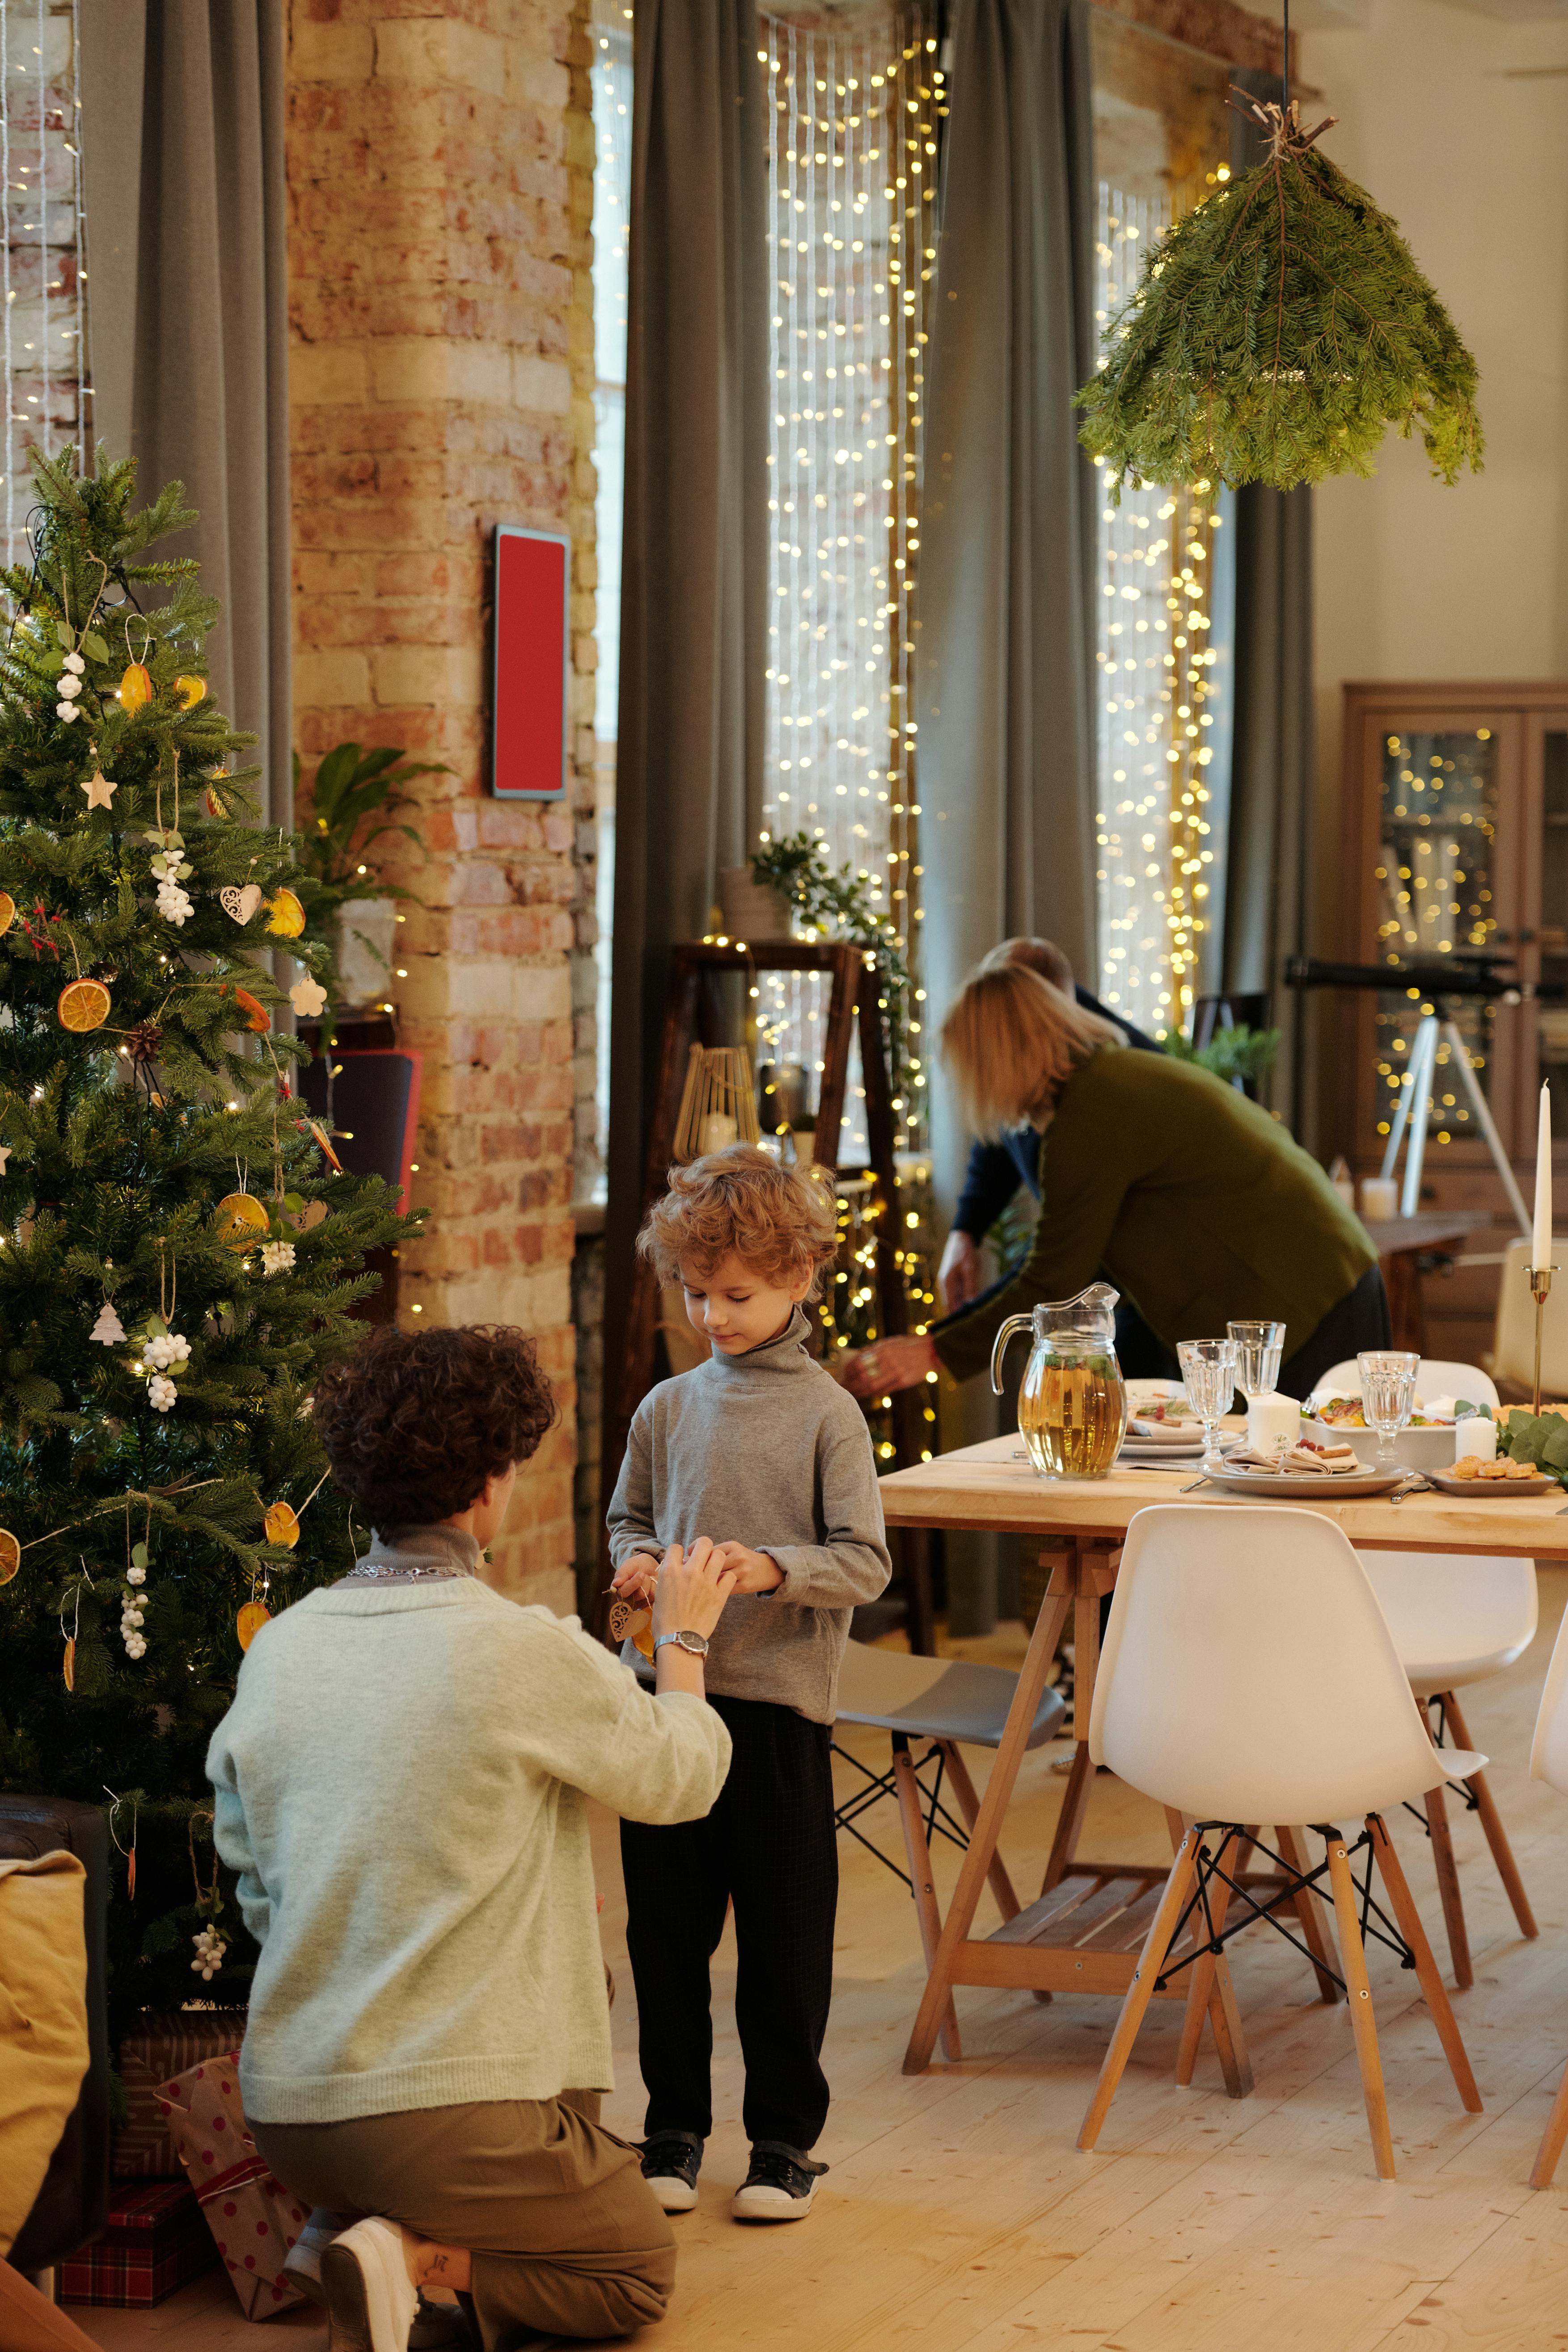 Une famille se préparant à se réunir pendant Noël | Source : Pexels